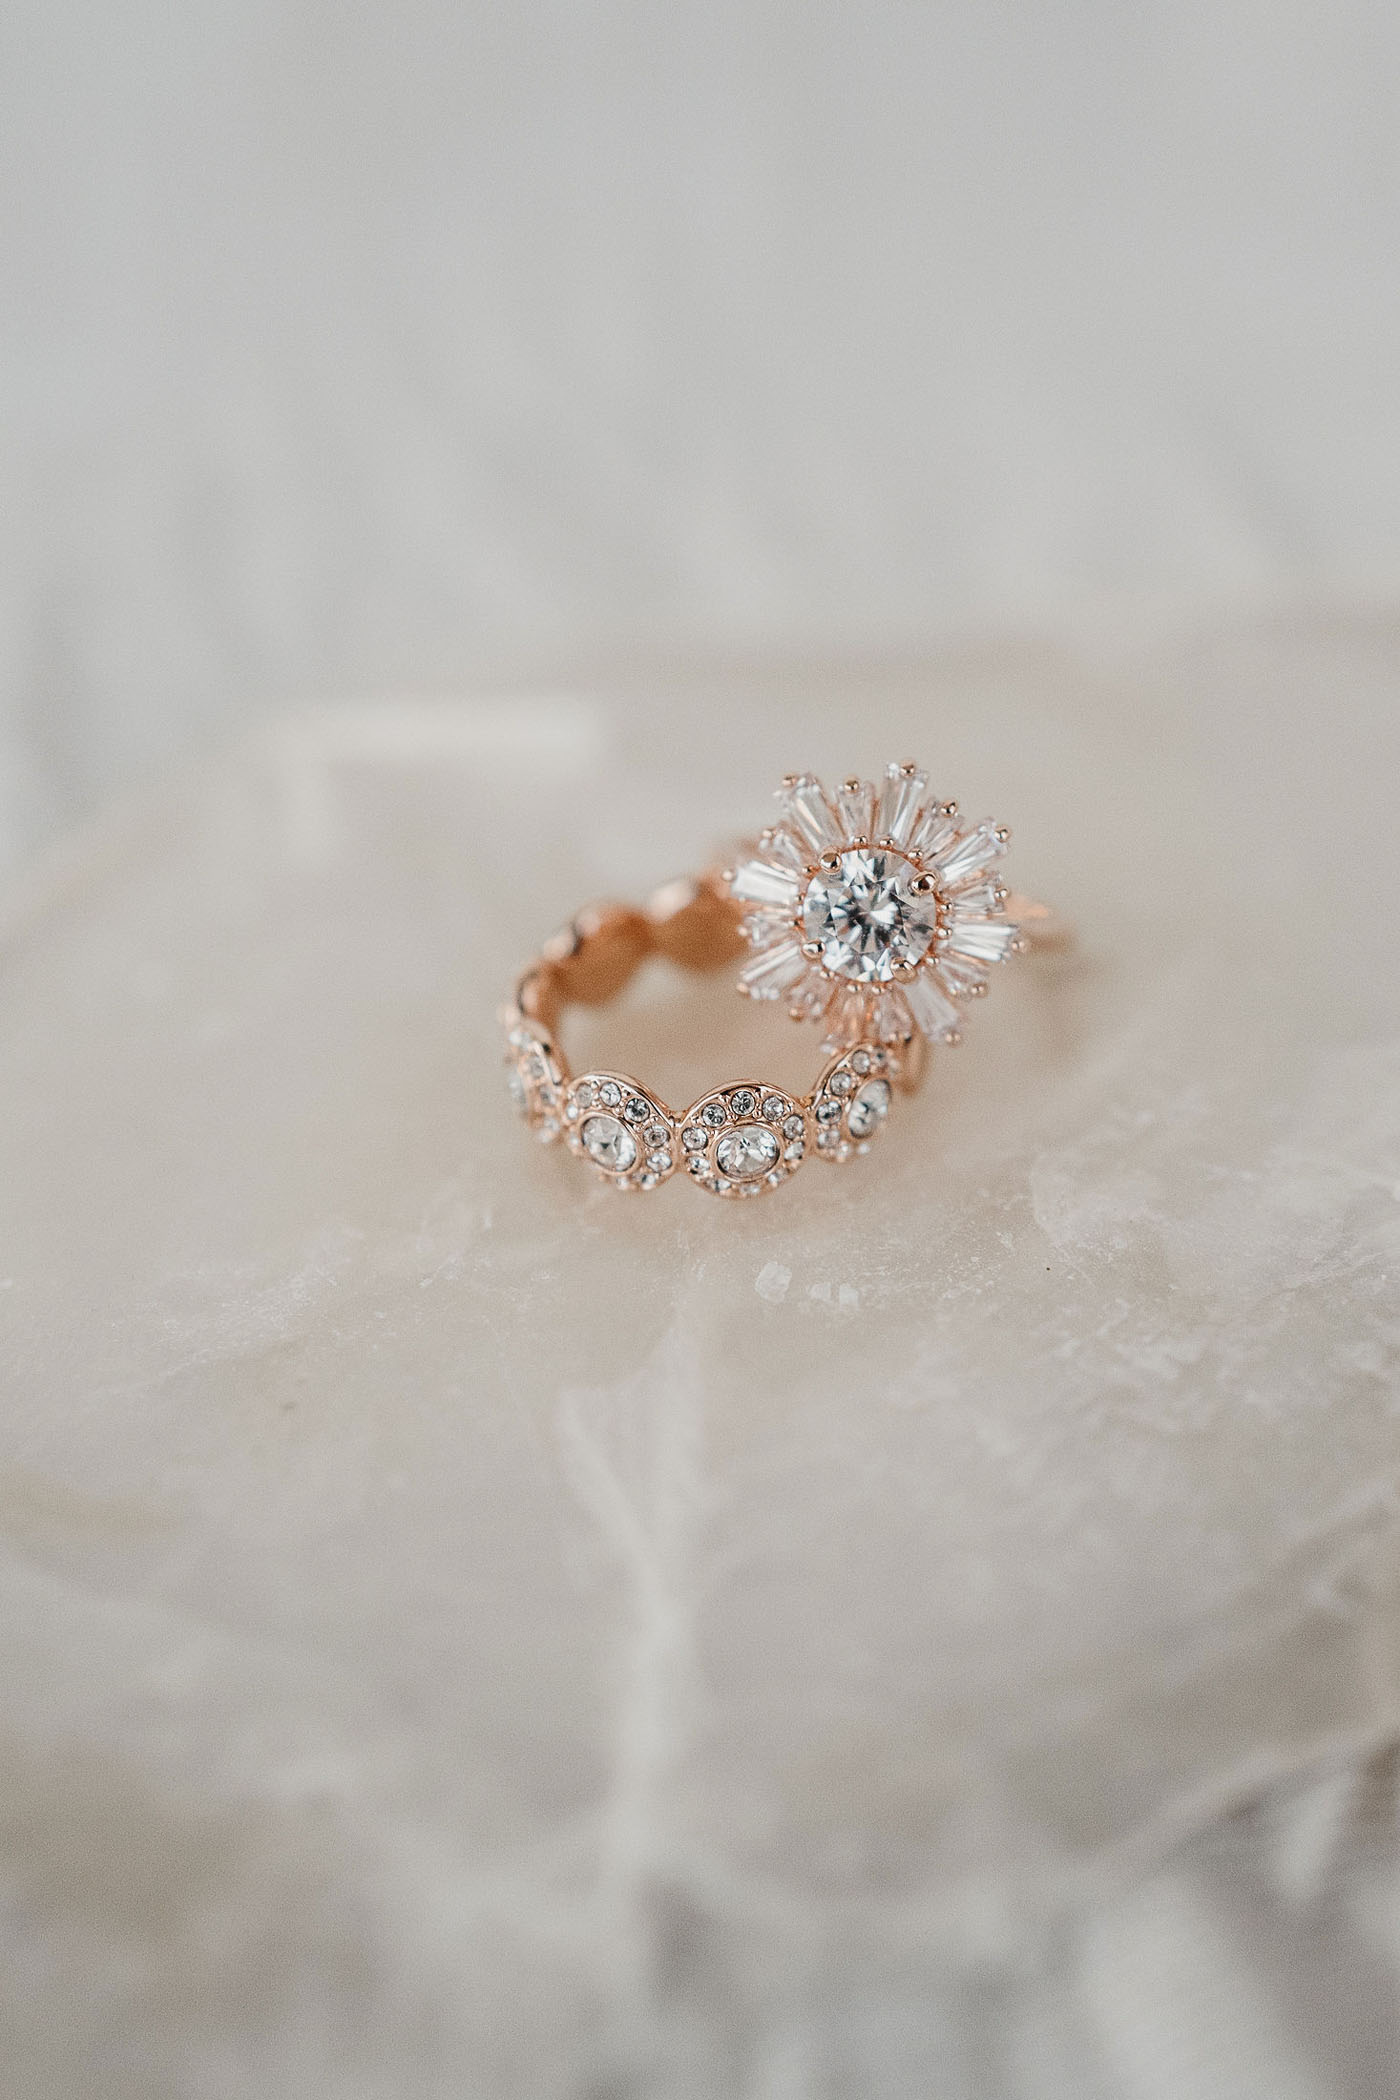 Starburst Wedding Ring